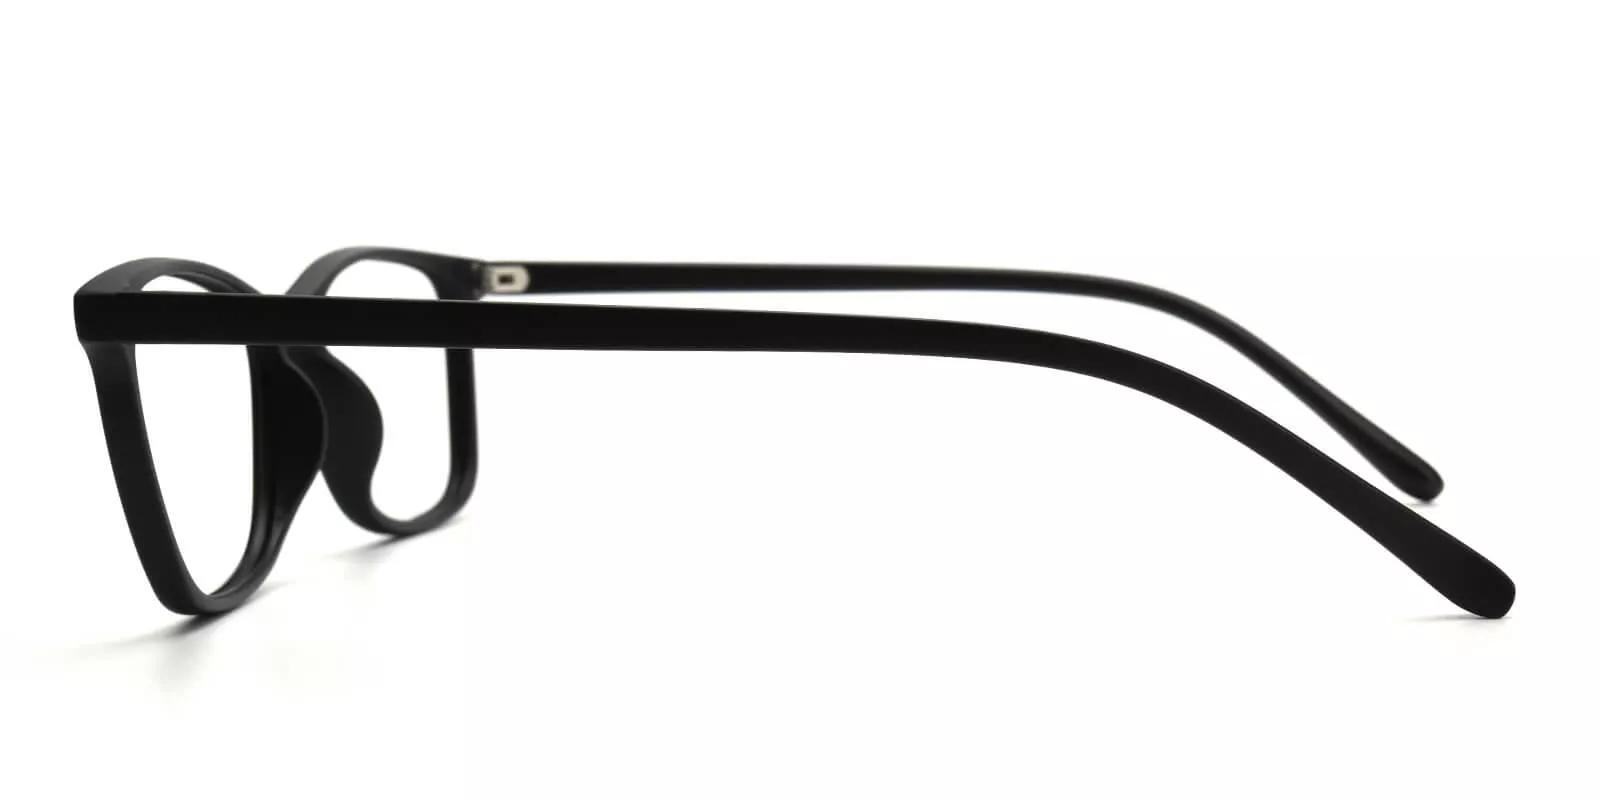 Davenport Light Weight Eyeglasses Black